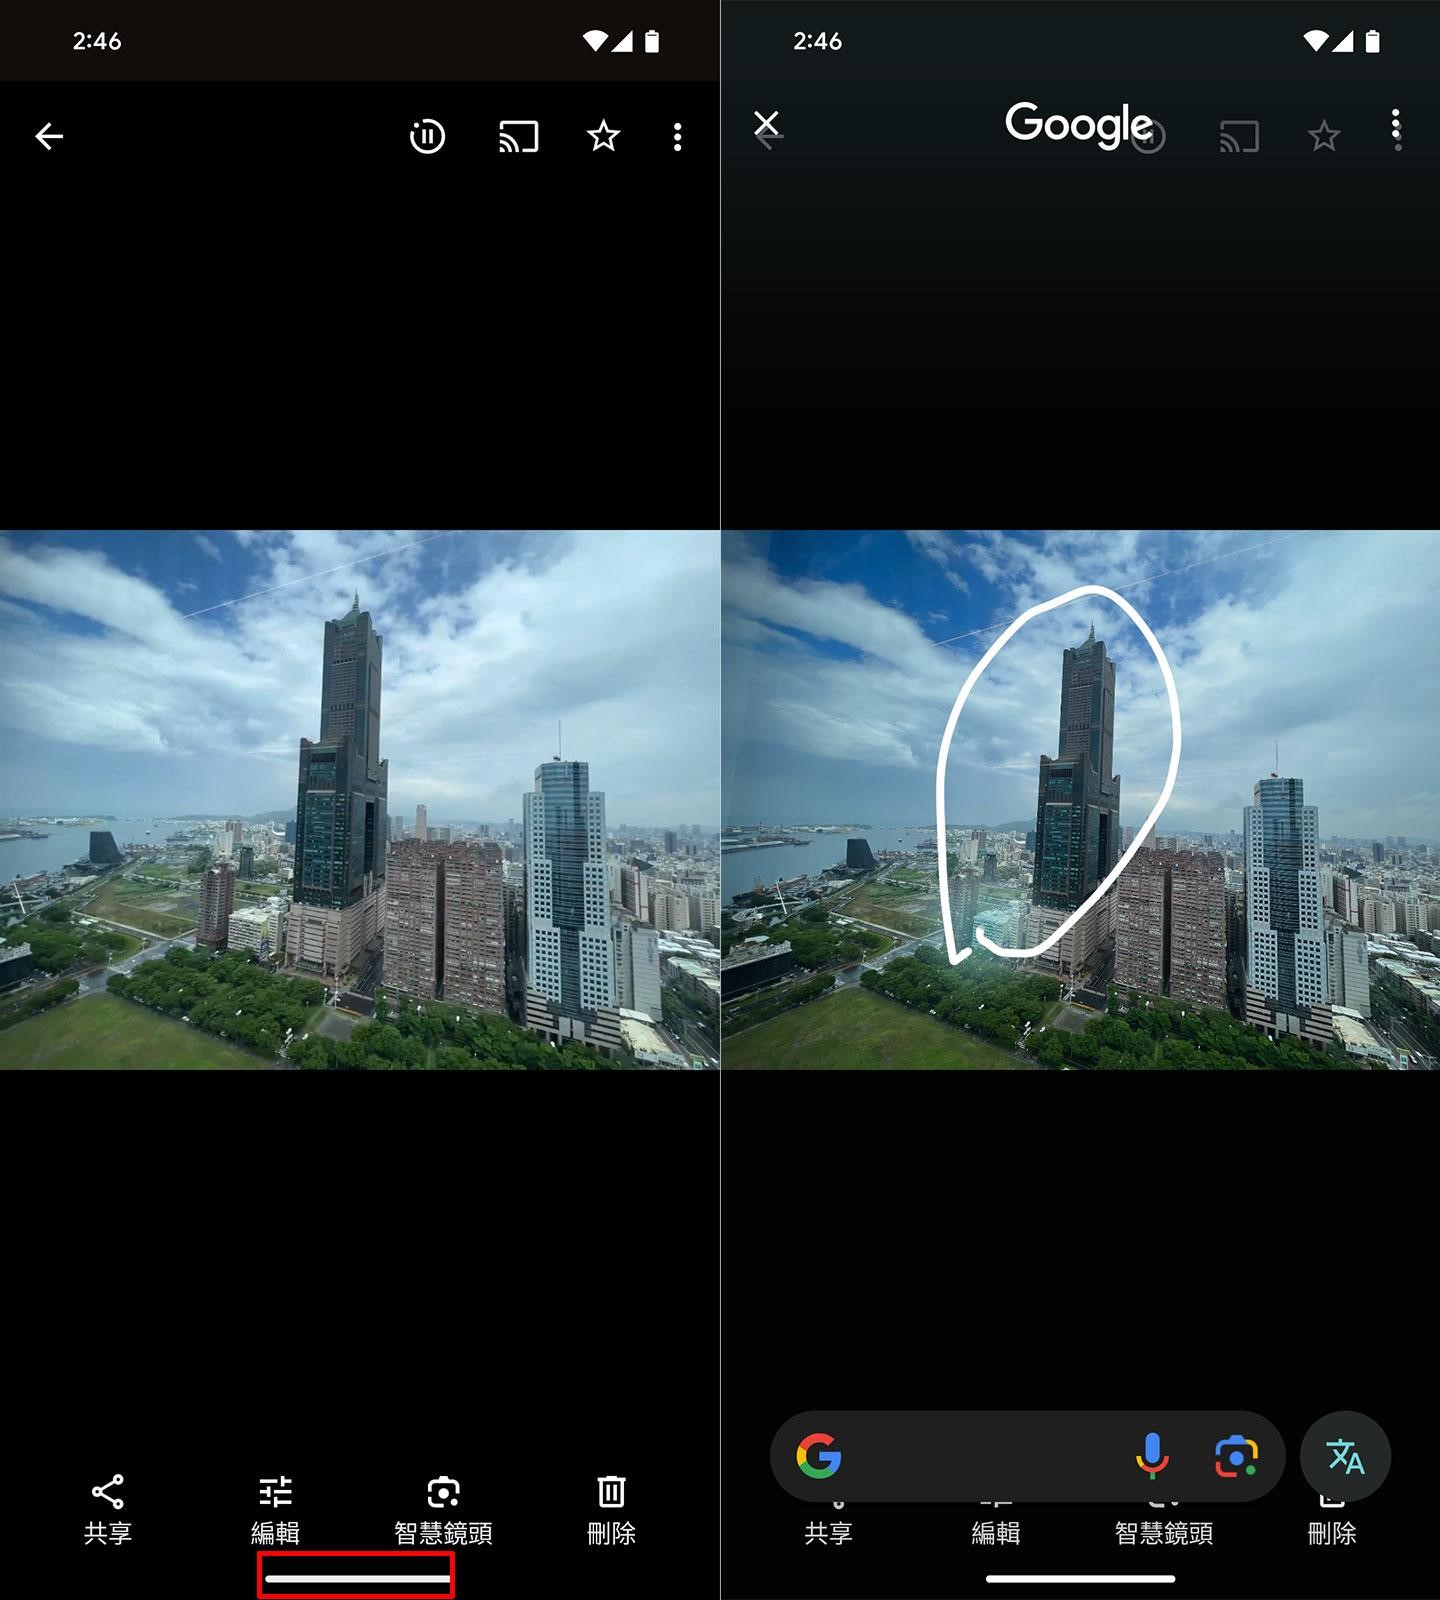 「資料搜尋」是 Google Pixel 近期更新的功能，在任一畫面下長按畫面底部就能啟用該功能，這時任意圈選畫面上想要搜尋的物件。